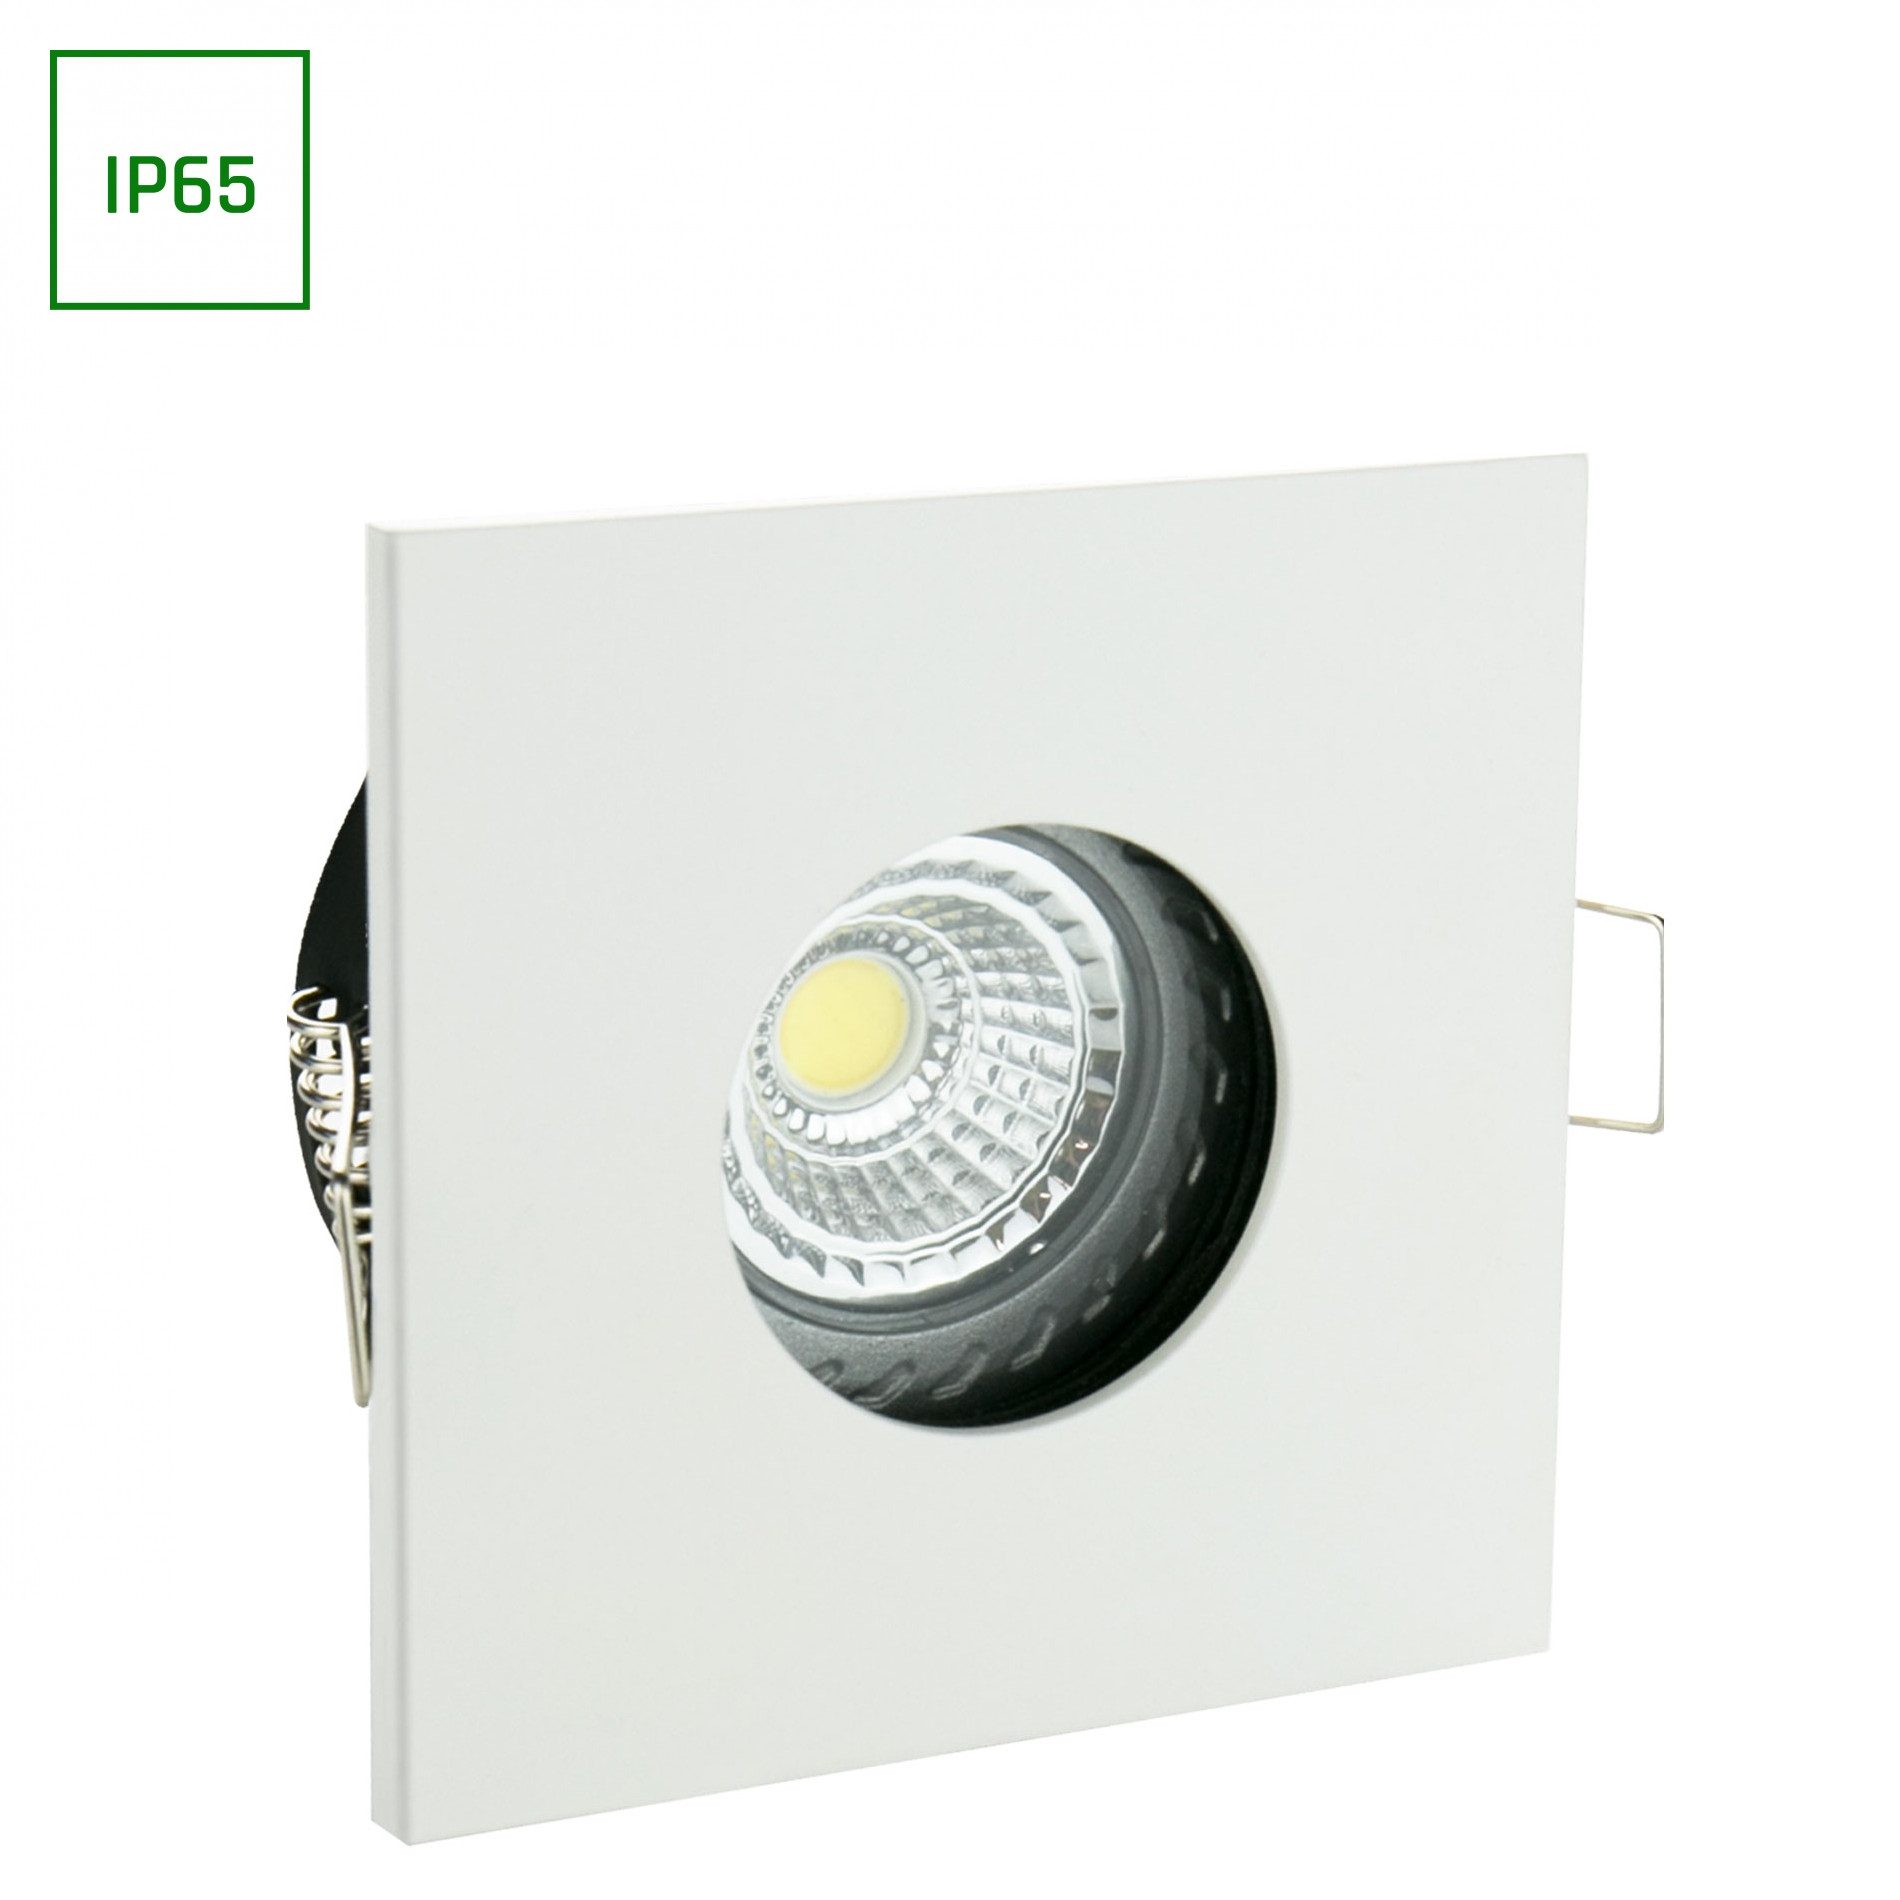 spectrum LED LED Einbaustrahler Einbaustrahler GU10 Spot Badezimmer Downlight IP65 max.10W eckig weiß, wasserdich, wasserfest, staubfest